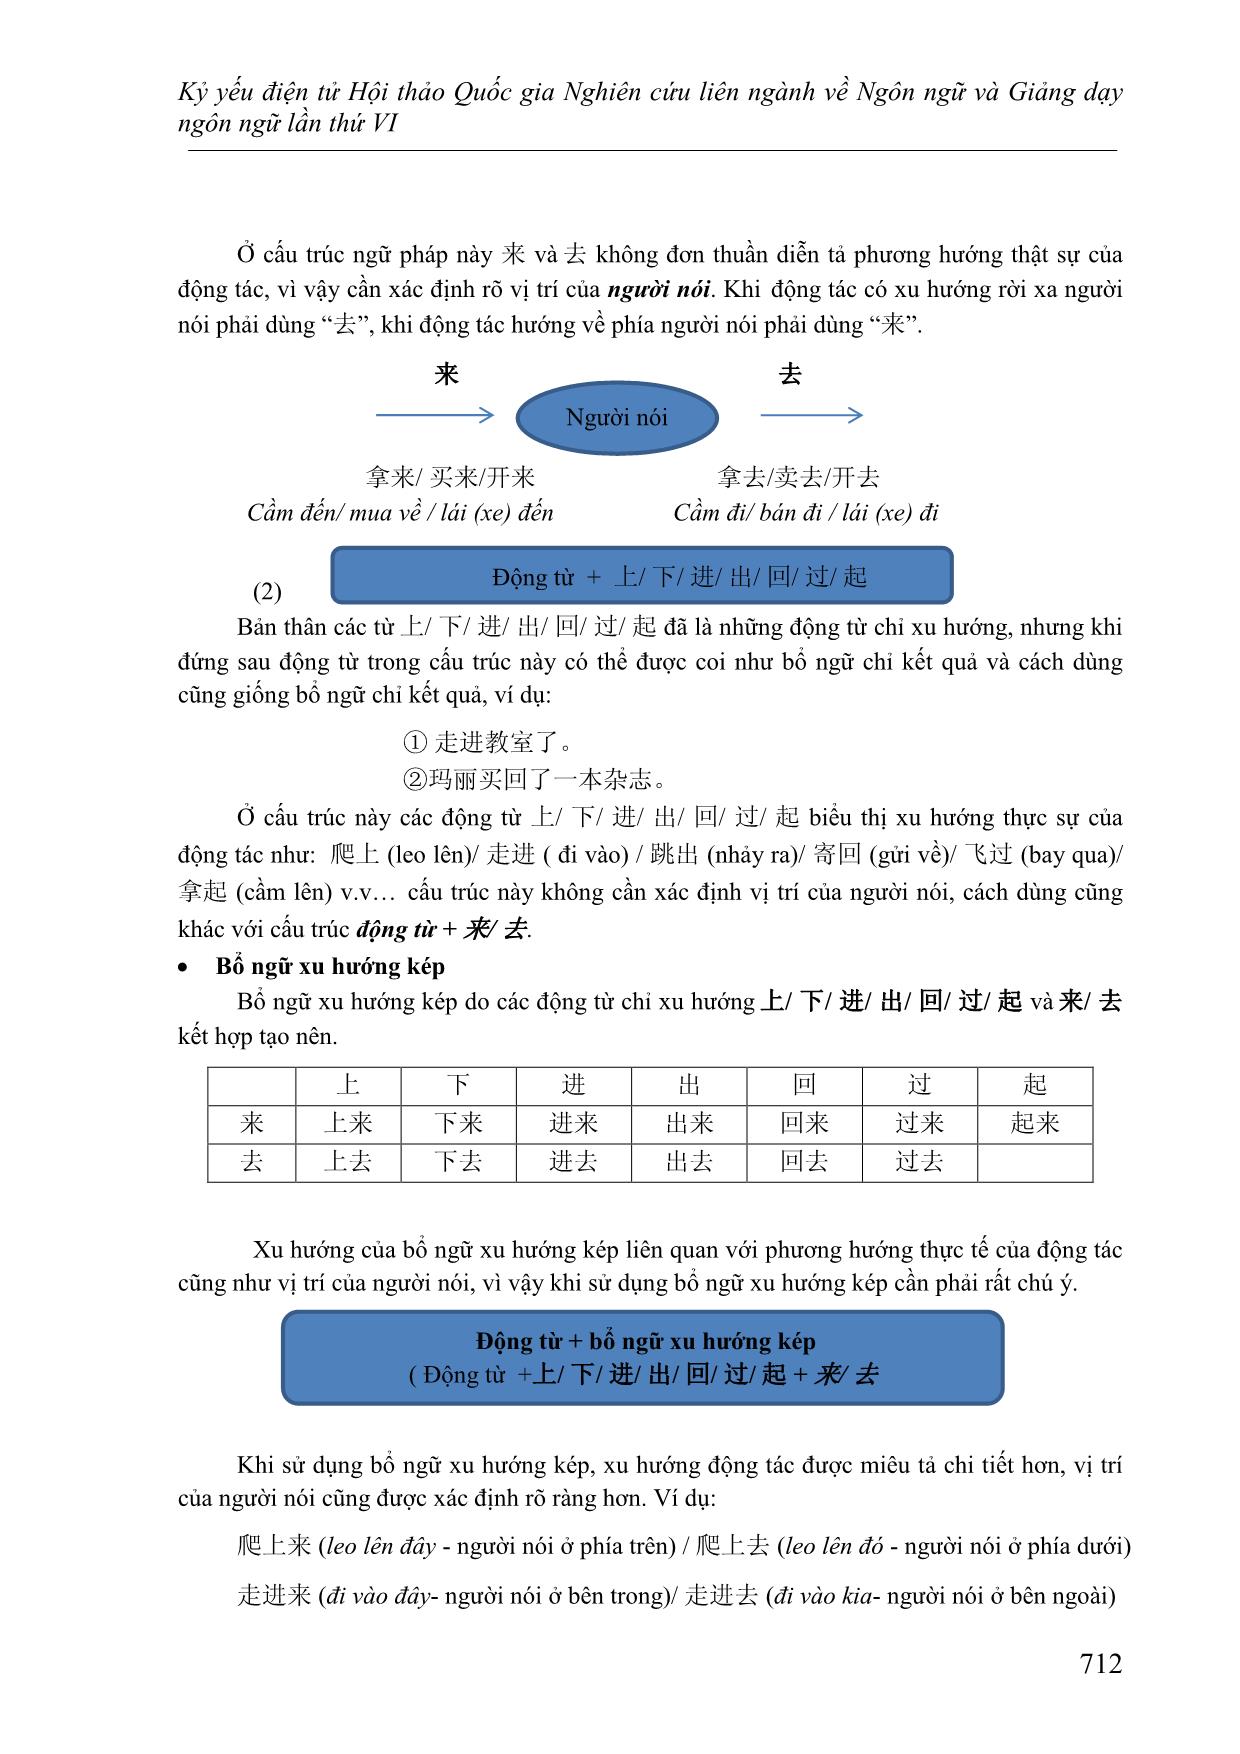 Cách dùng linh hoạt của bổ ngữ xu hướng và cách xác định ý nghĩa của câu khi sử dụng bổ ngữ xu hướng kép 上来, 上去, 下来,下 trang 2